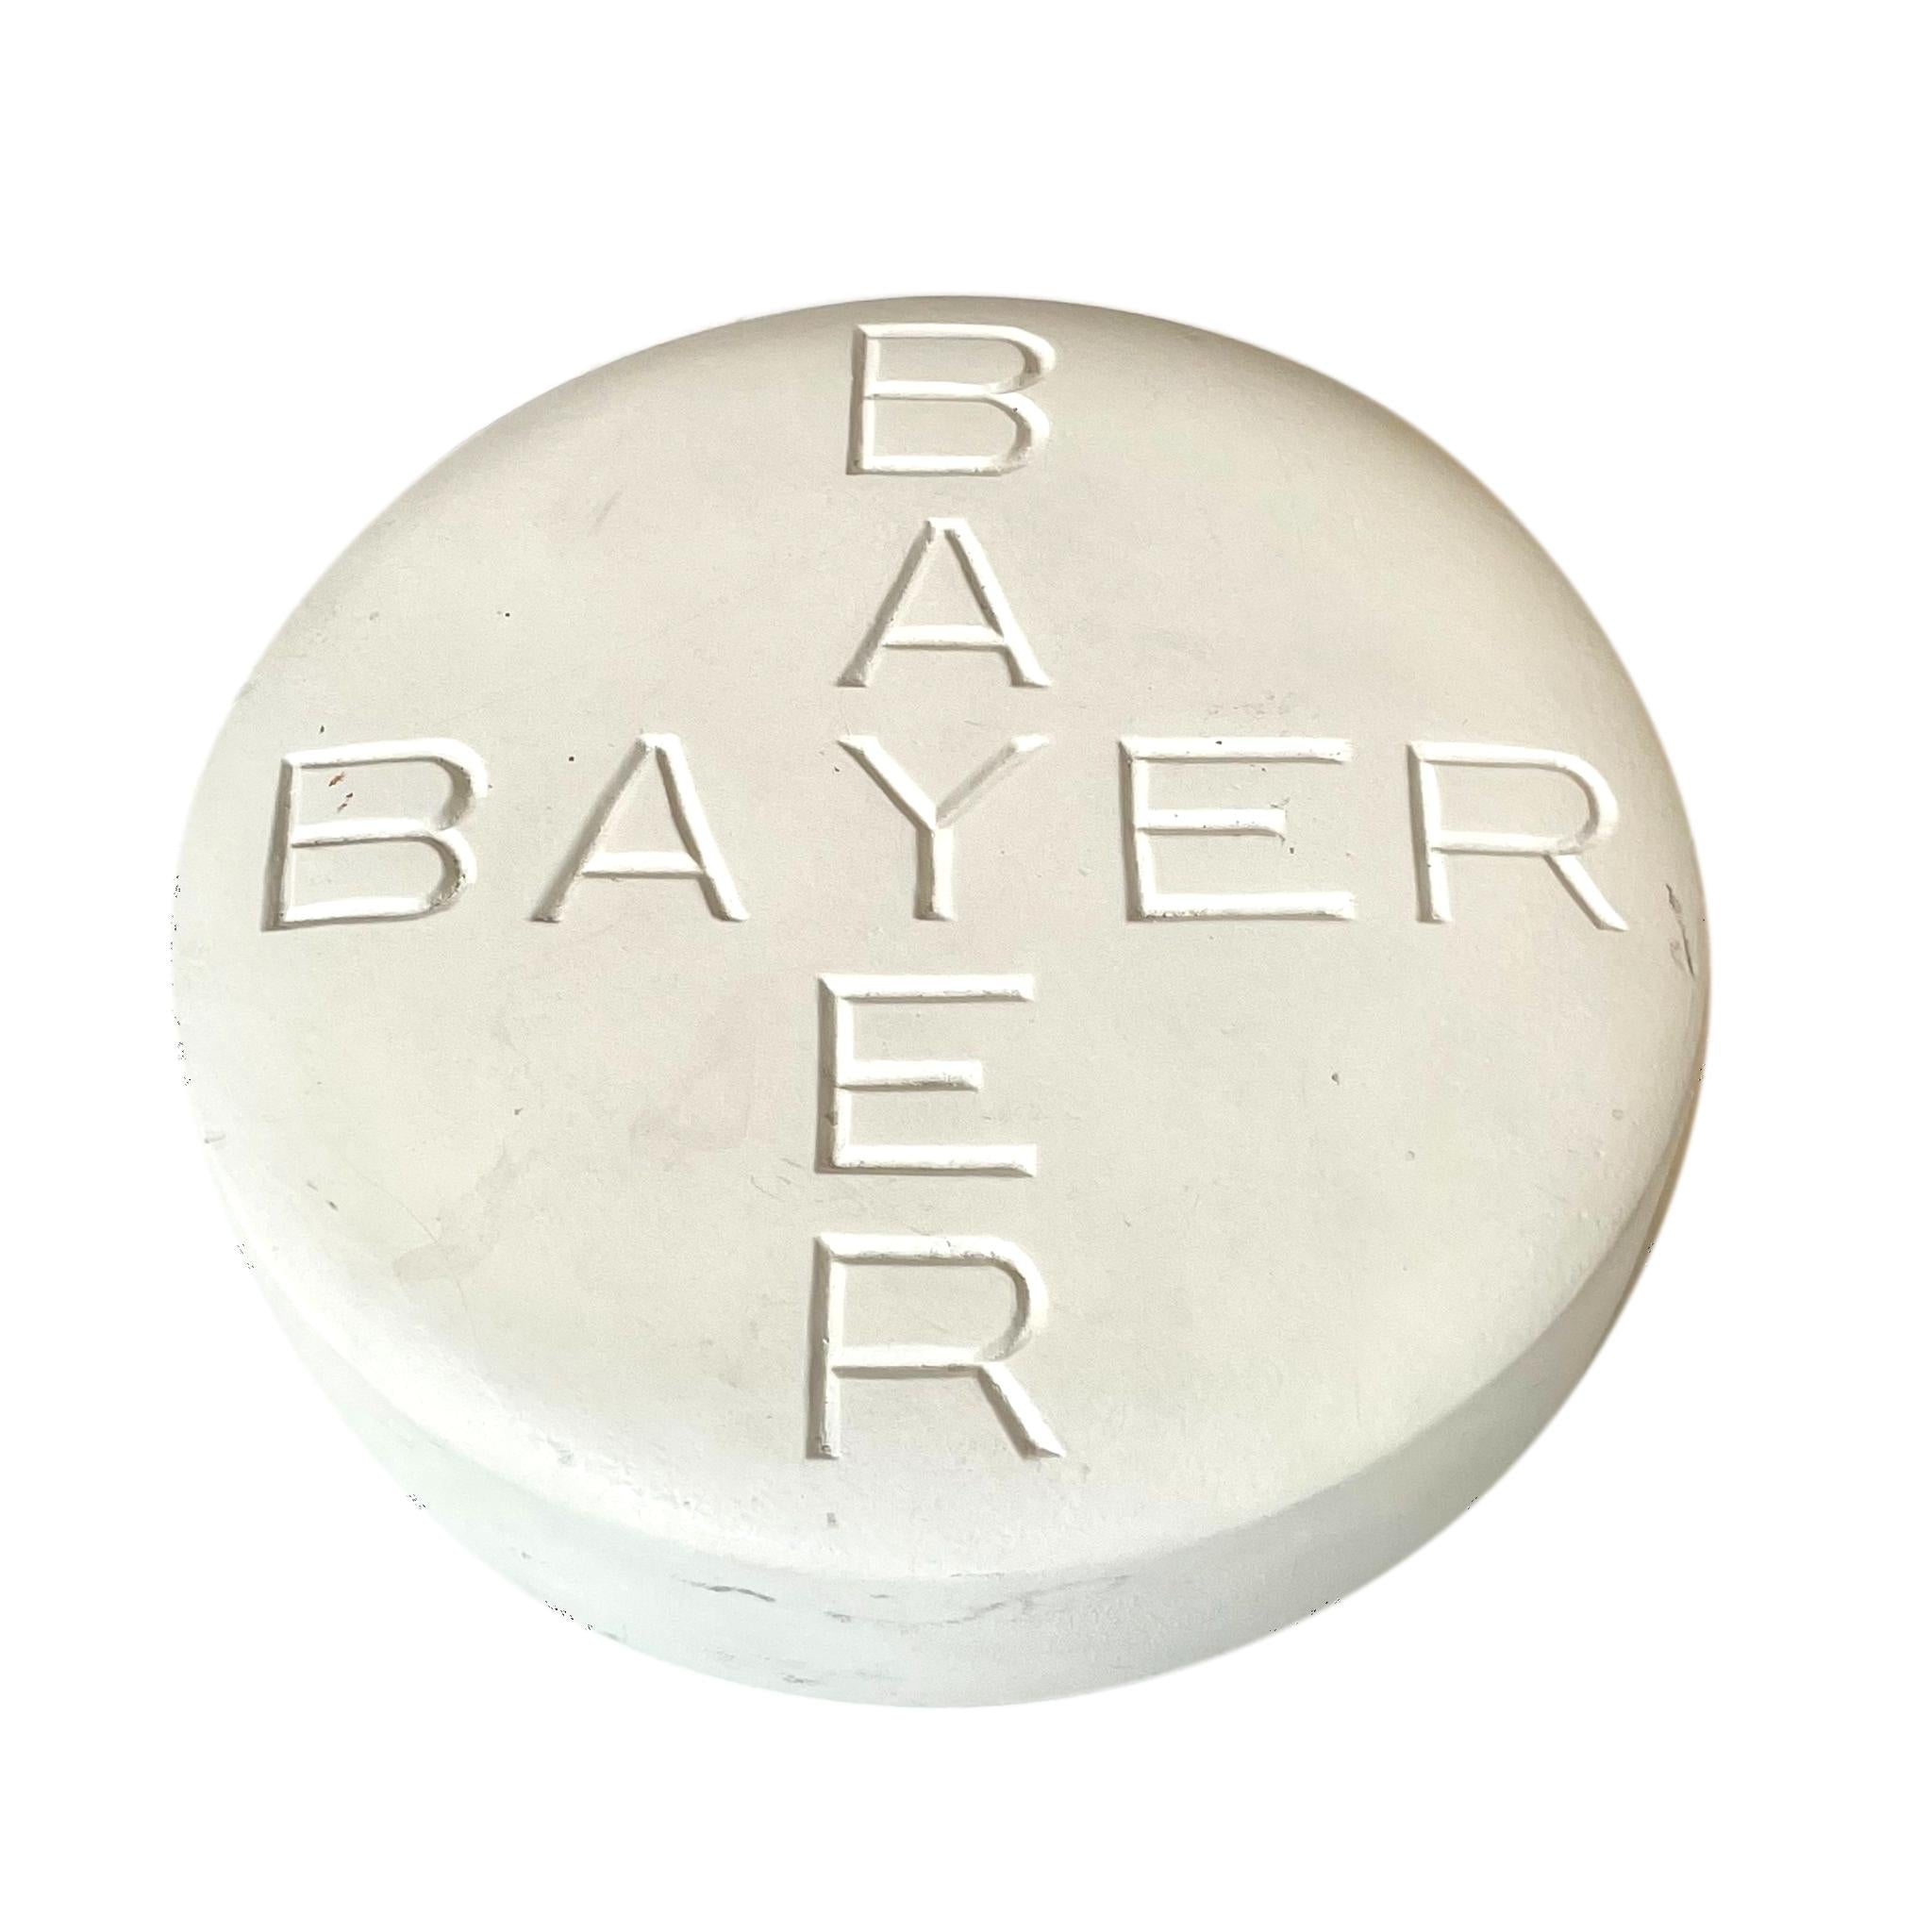 Giant Bayer Pill Pop Art